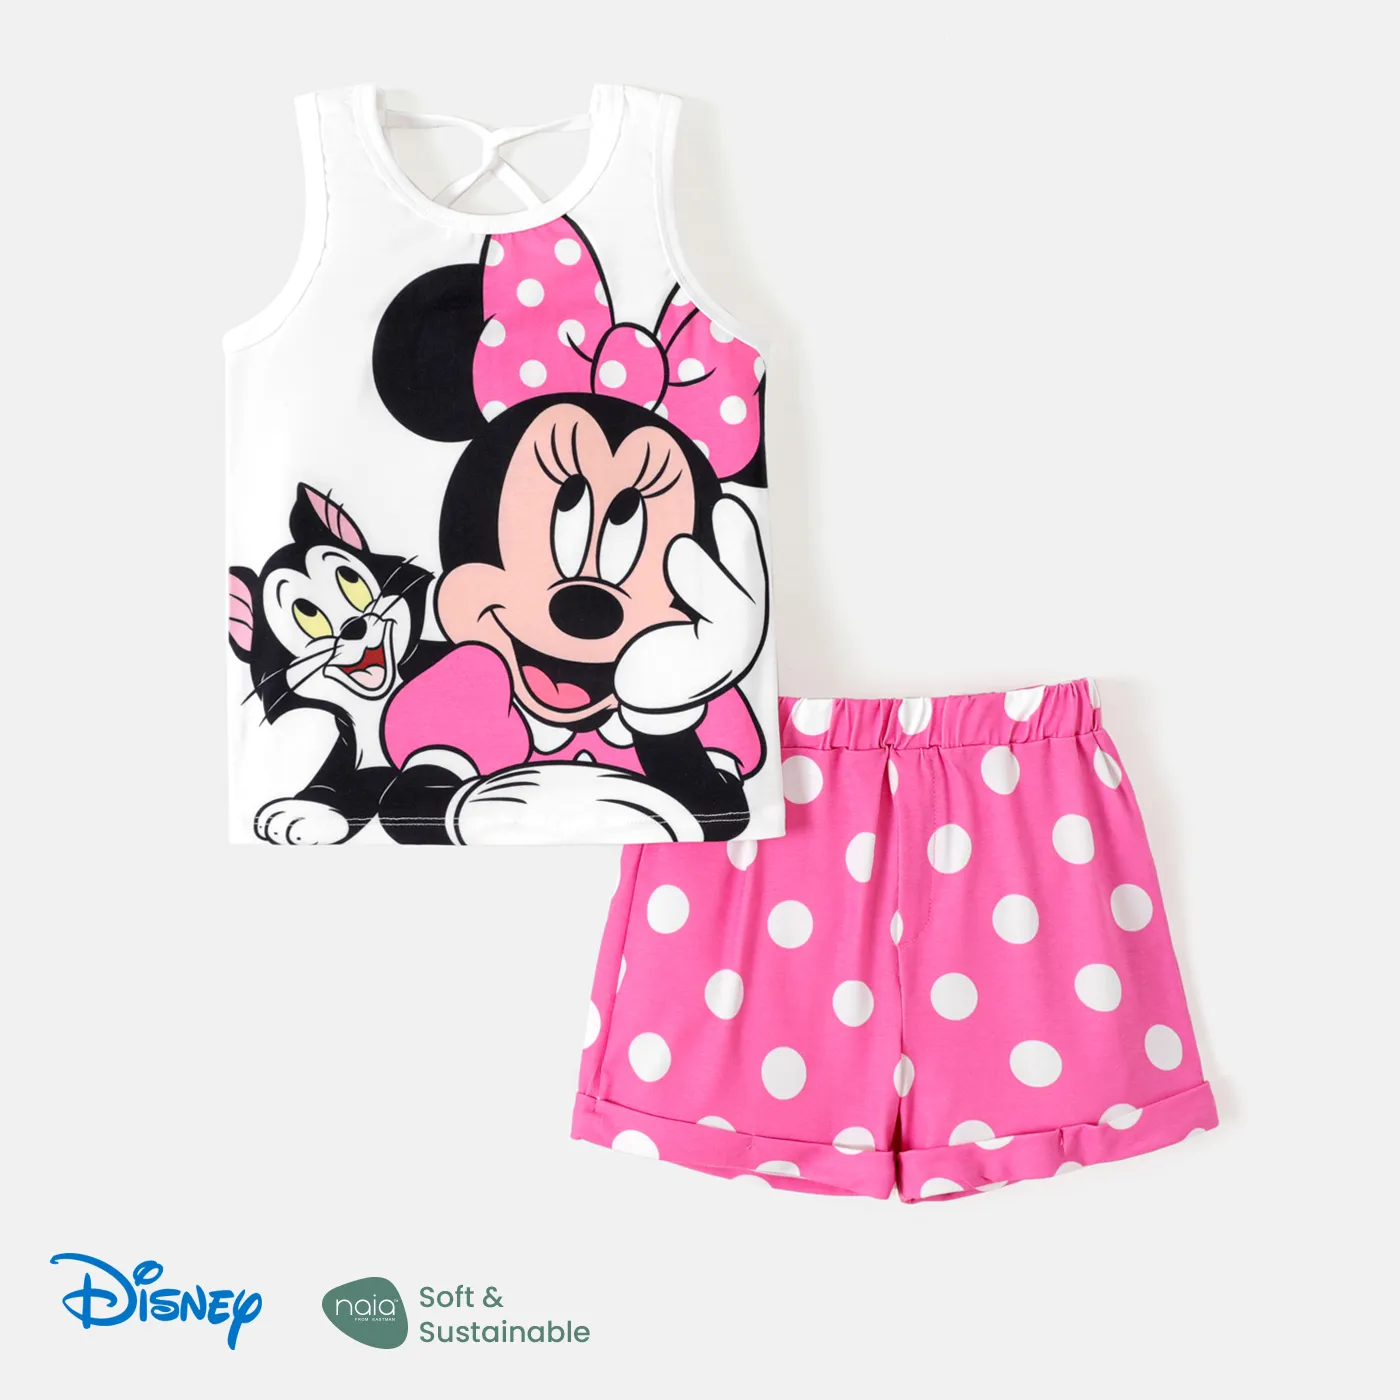 

Disney Mickey and Friends Toddler Girl 2pcs Naia™ Character Print Tank Top and Polka Dots/Floral Print Shorts Set